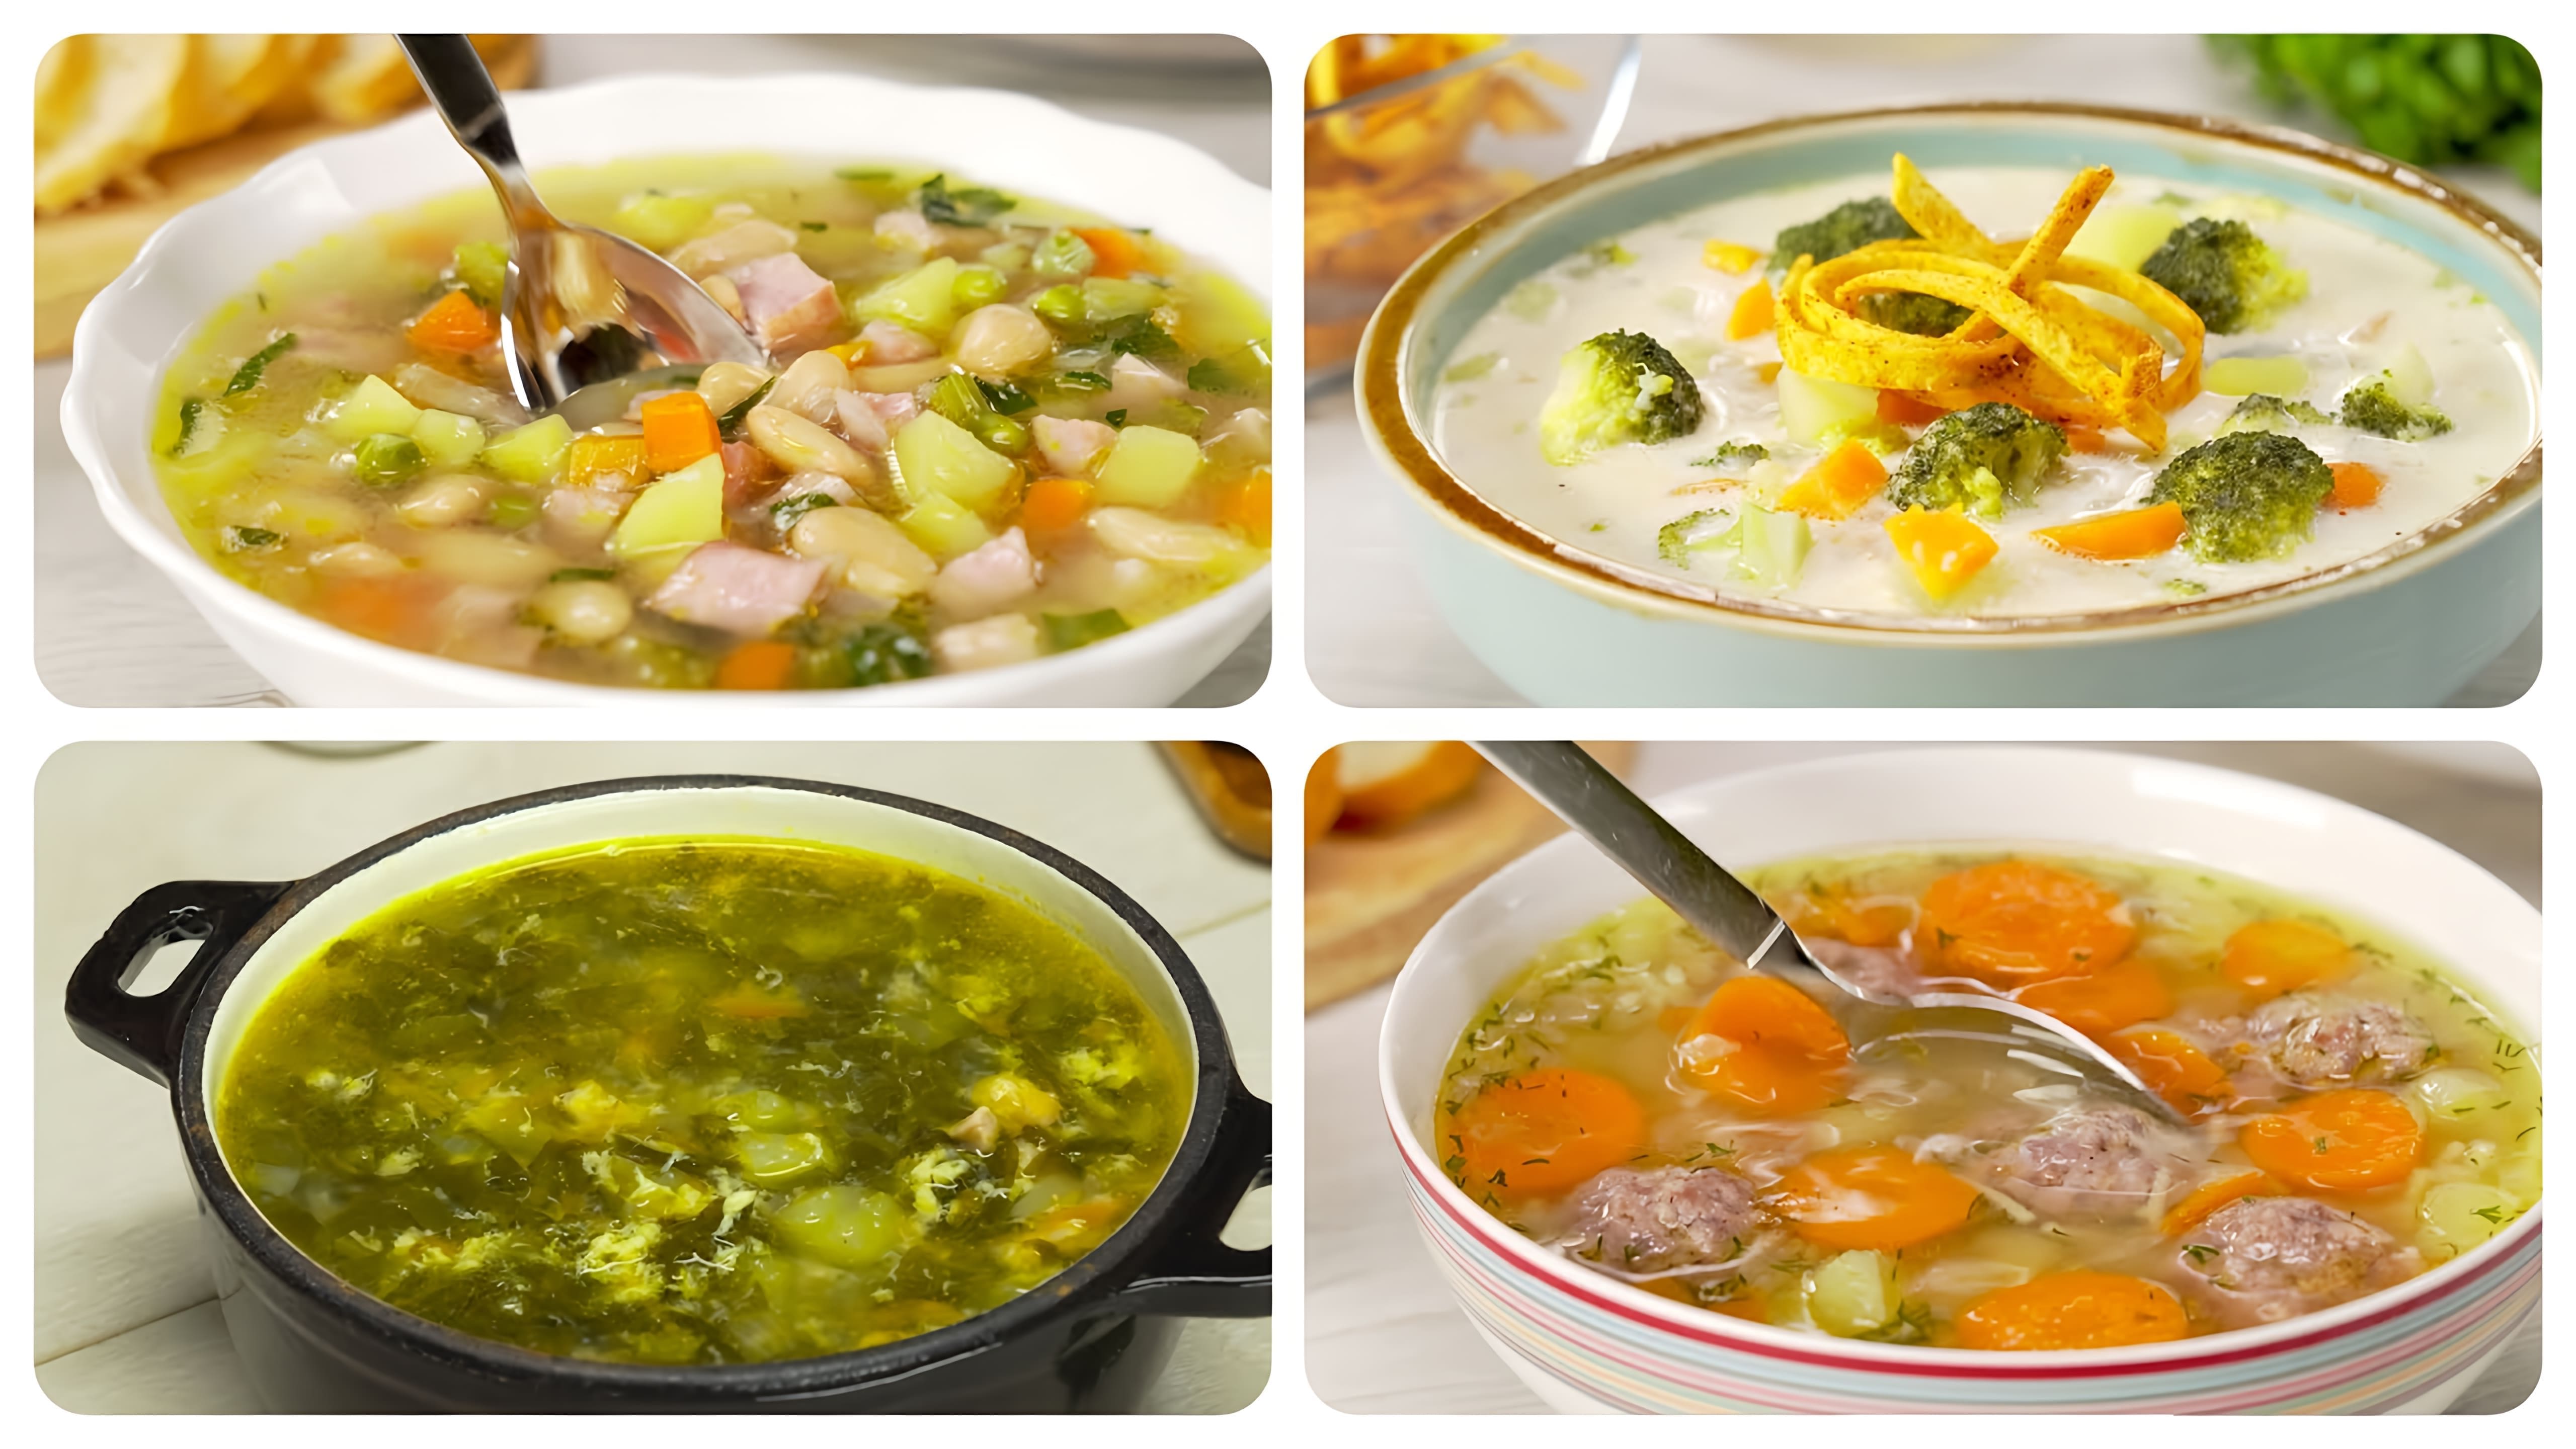 В данном видео демонстрируются 4 различных супа быстрого приготовления, которые можно приготовить в любое время и на любой случай жизни